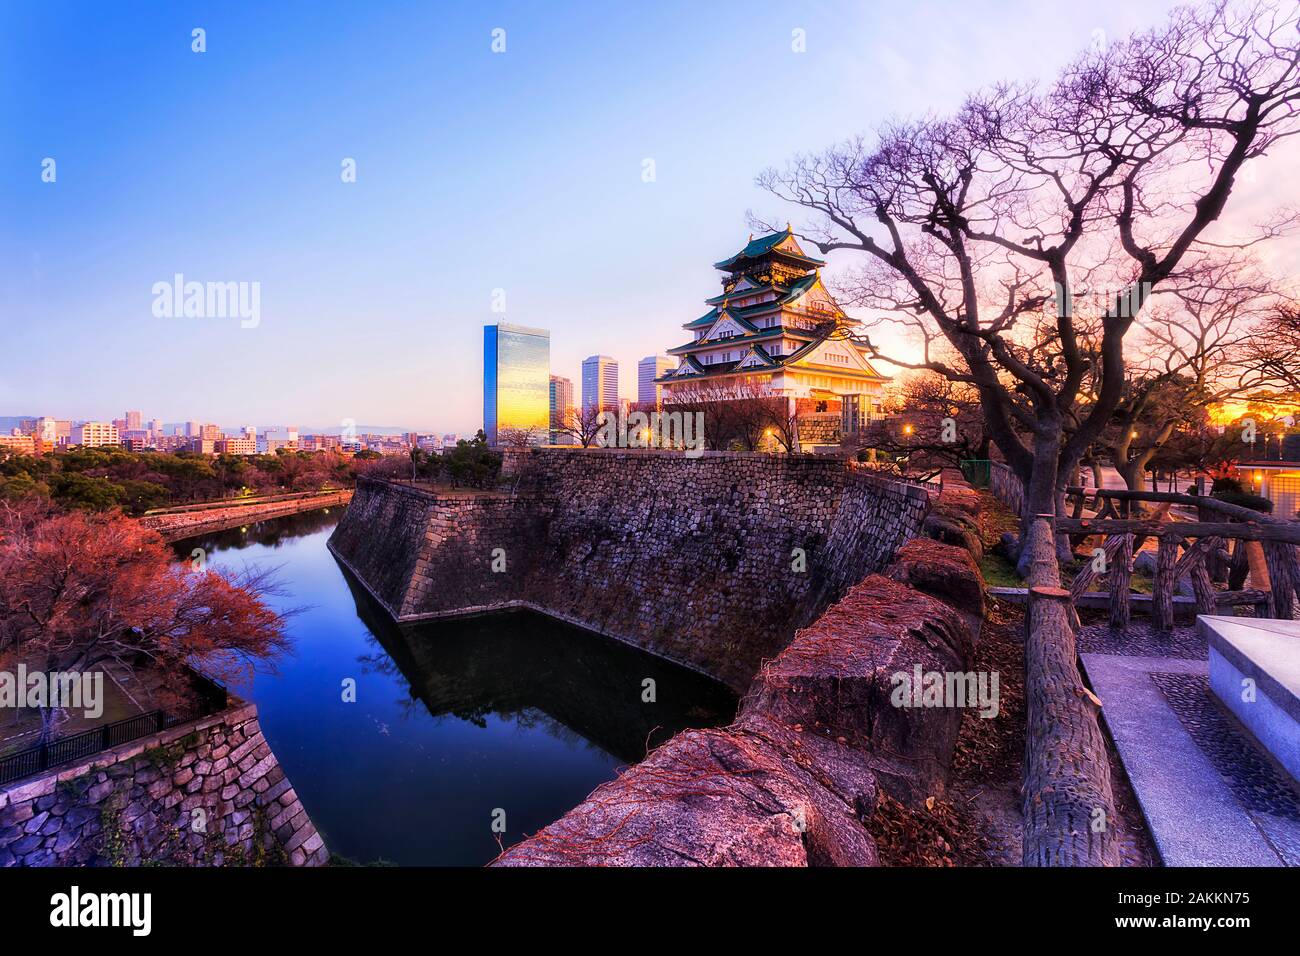 Le principal donjon de château d'Osaka de shogun fois s'élève au-dessus de murs en pierre et de douves en eau au lever contre ciel clair et moderne lointain busines Banque D'Images